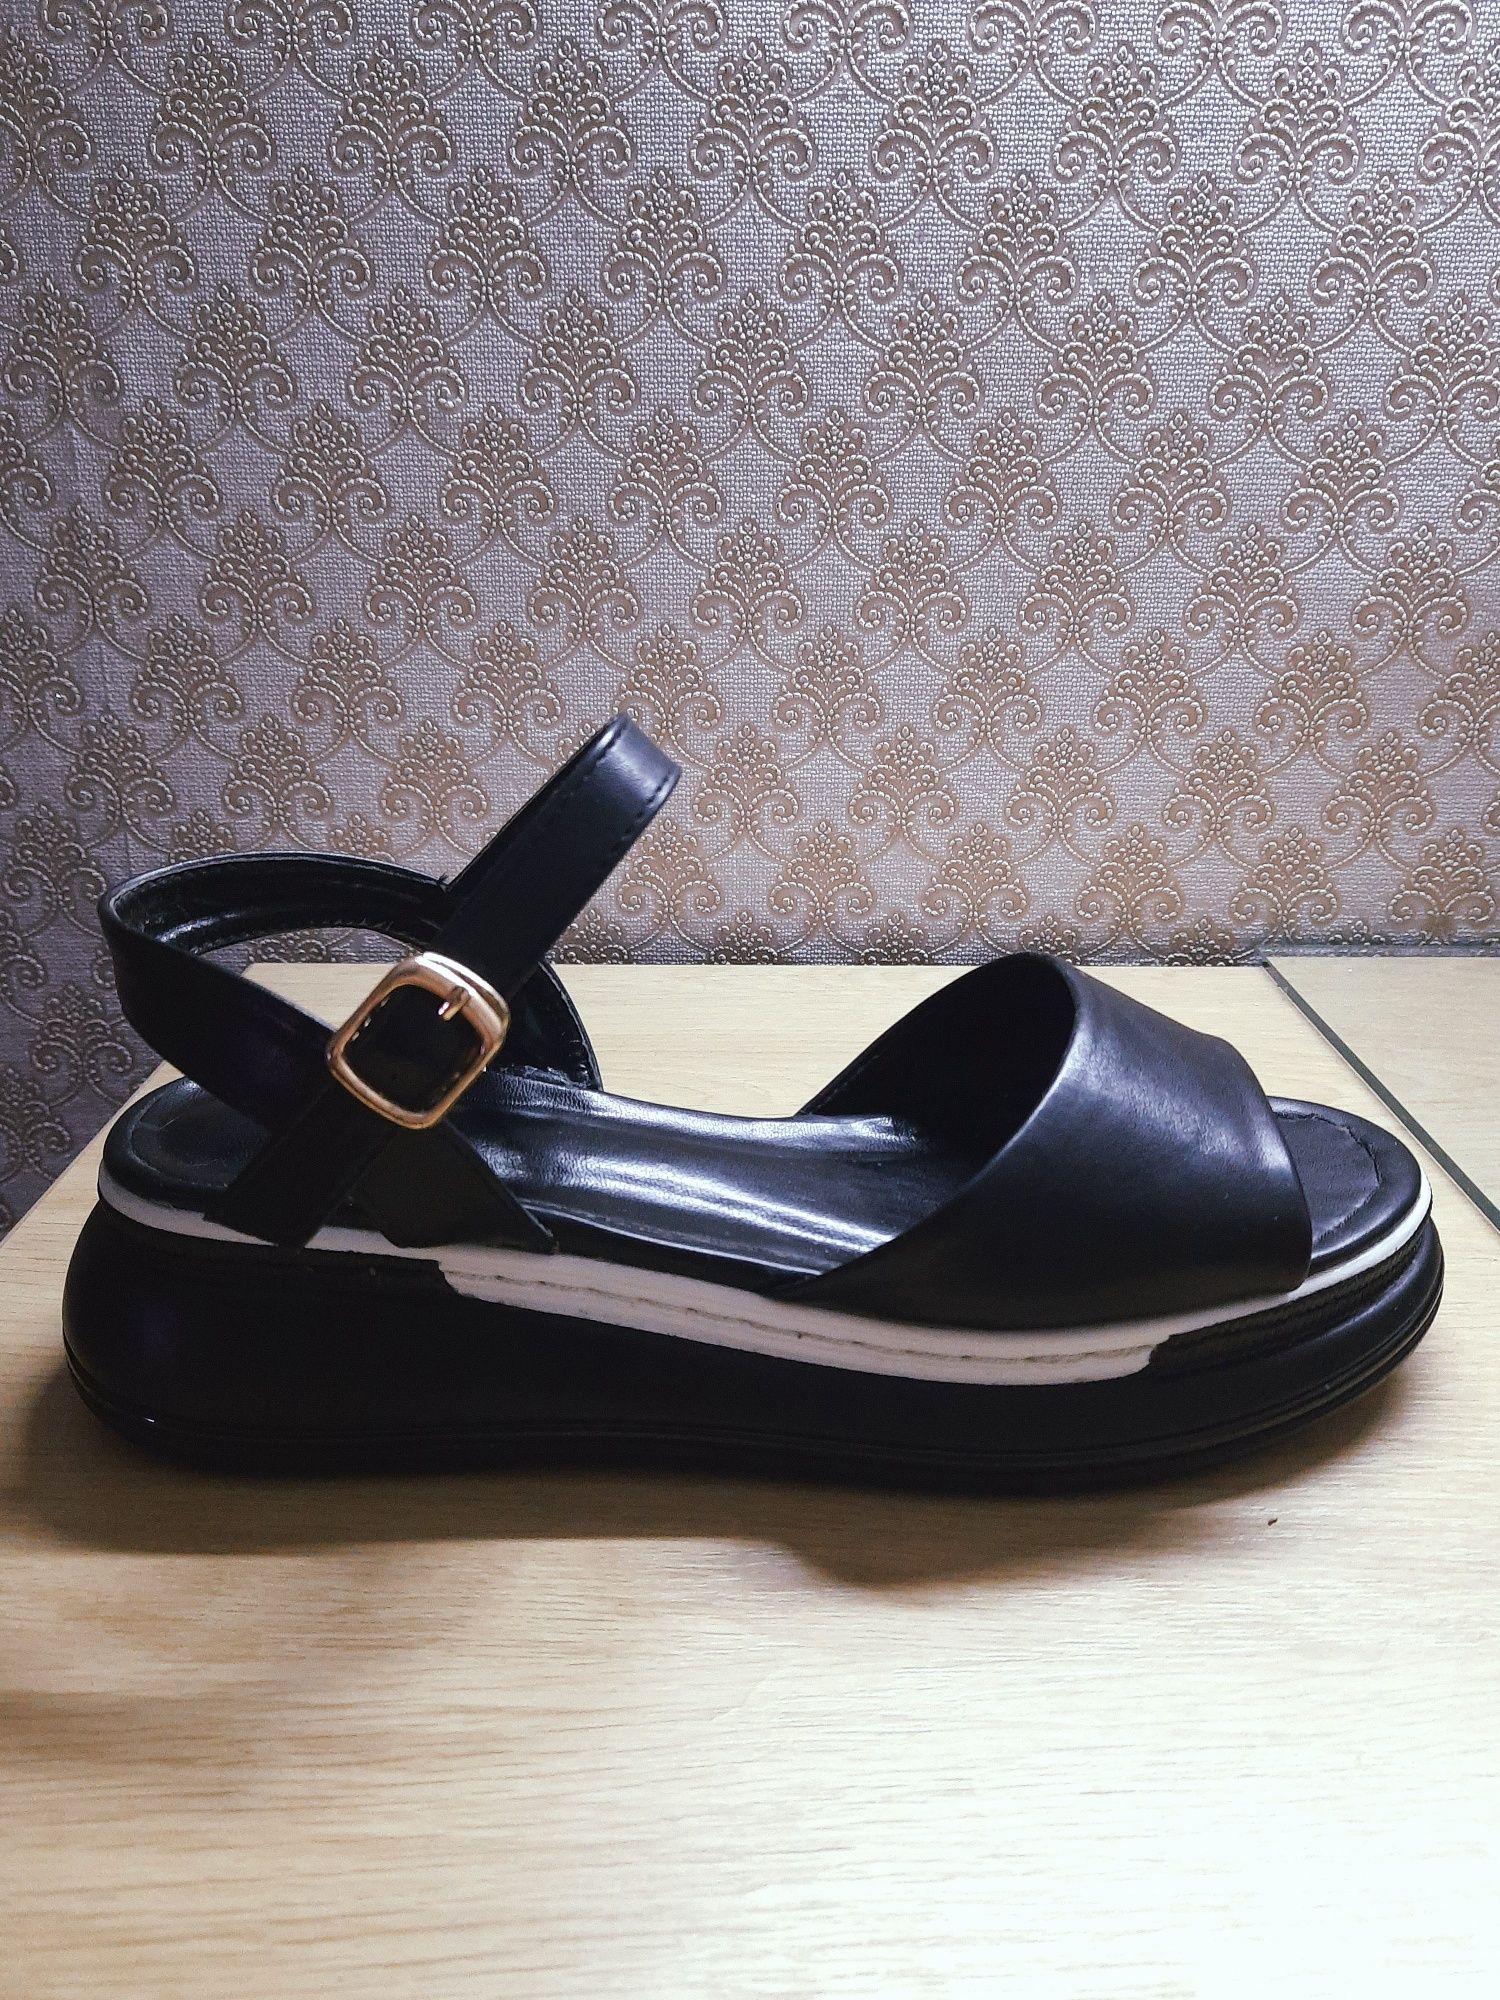 Кроссовки и босоножки |40 размер | обувь женская